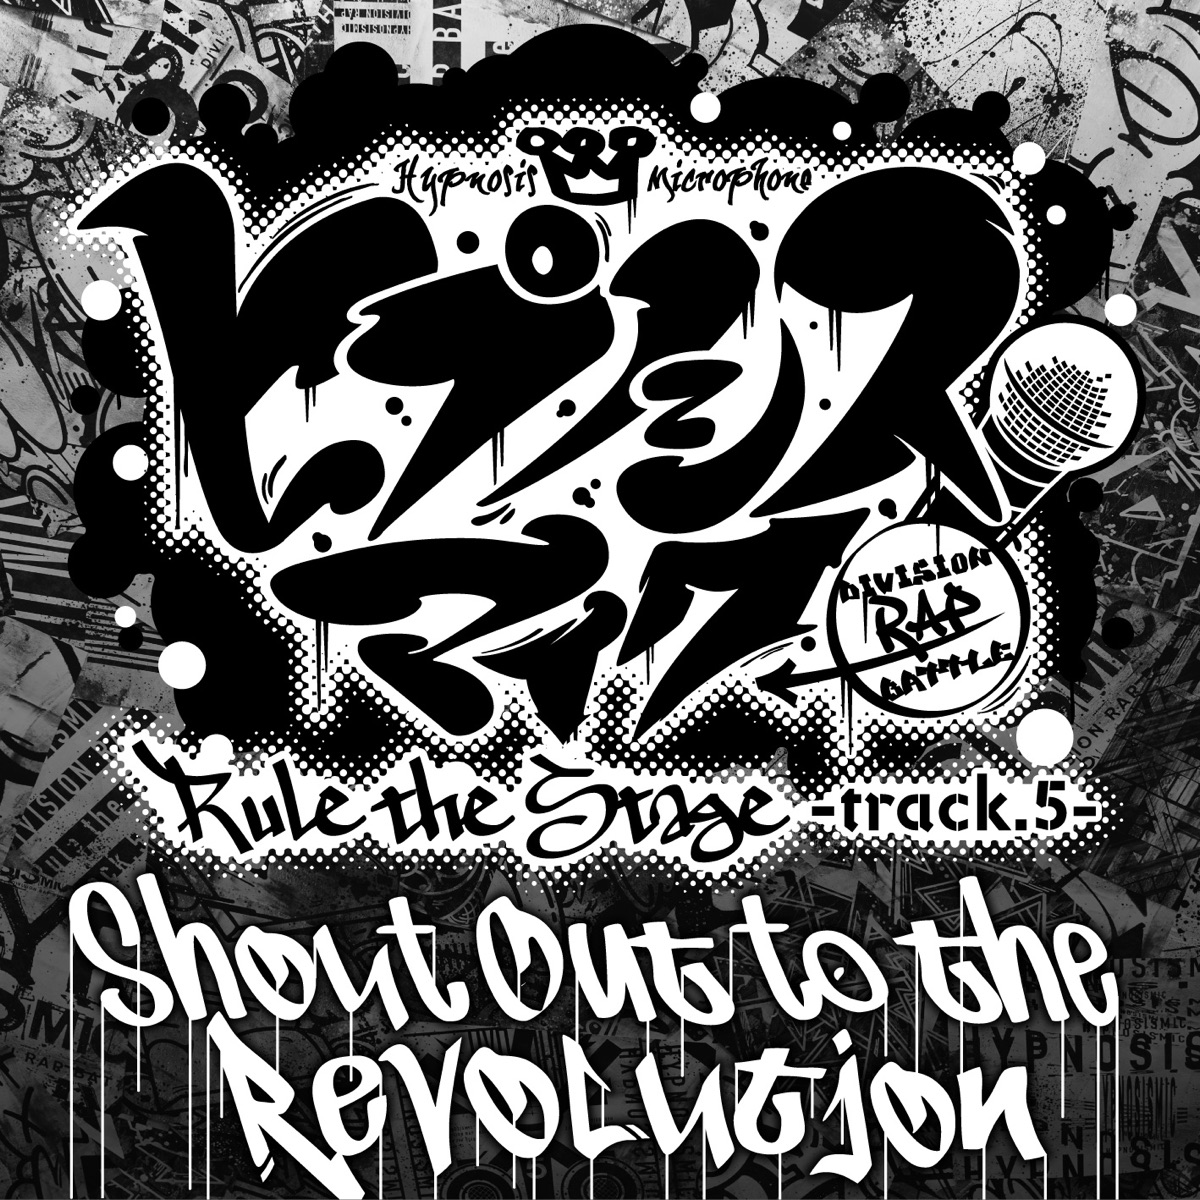 『ヒプノシスマイク -D.R.B- Rule the Stage (Track.5 All Cast) - Shout Out to the Revolution -Rule the Stage track.5-』収録の『Shout Out to the Revolution -Rule the Stage track.5-』ジャケット